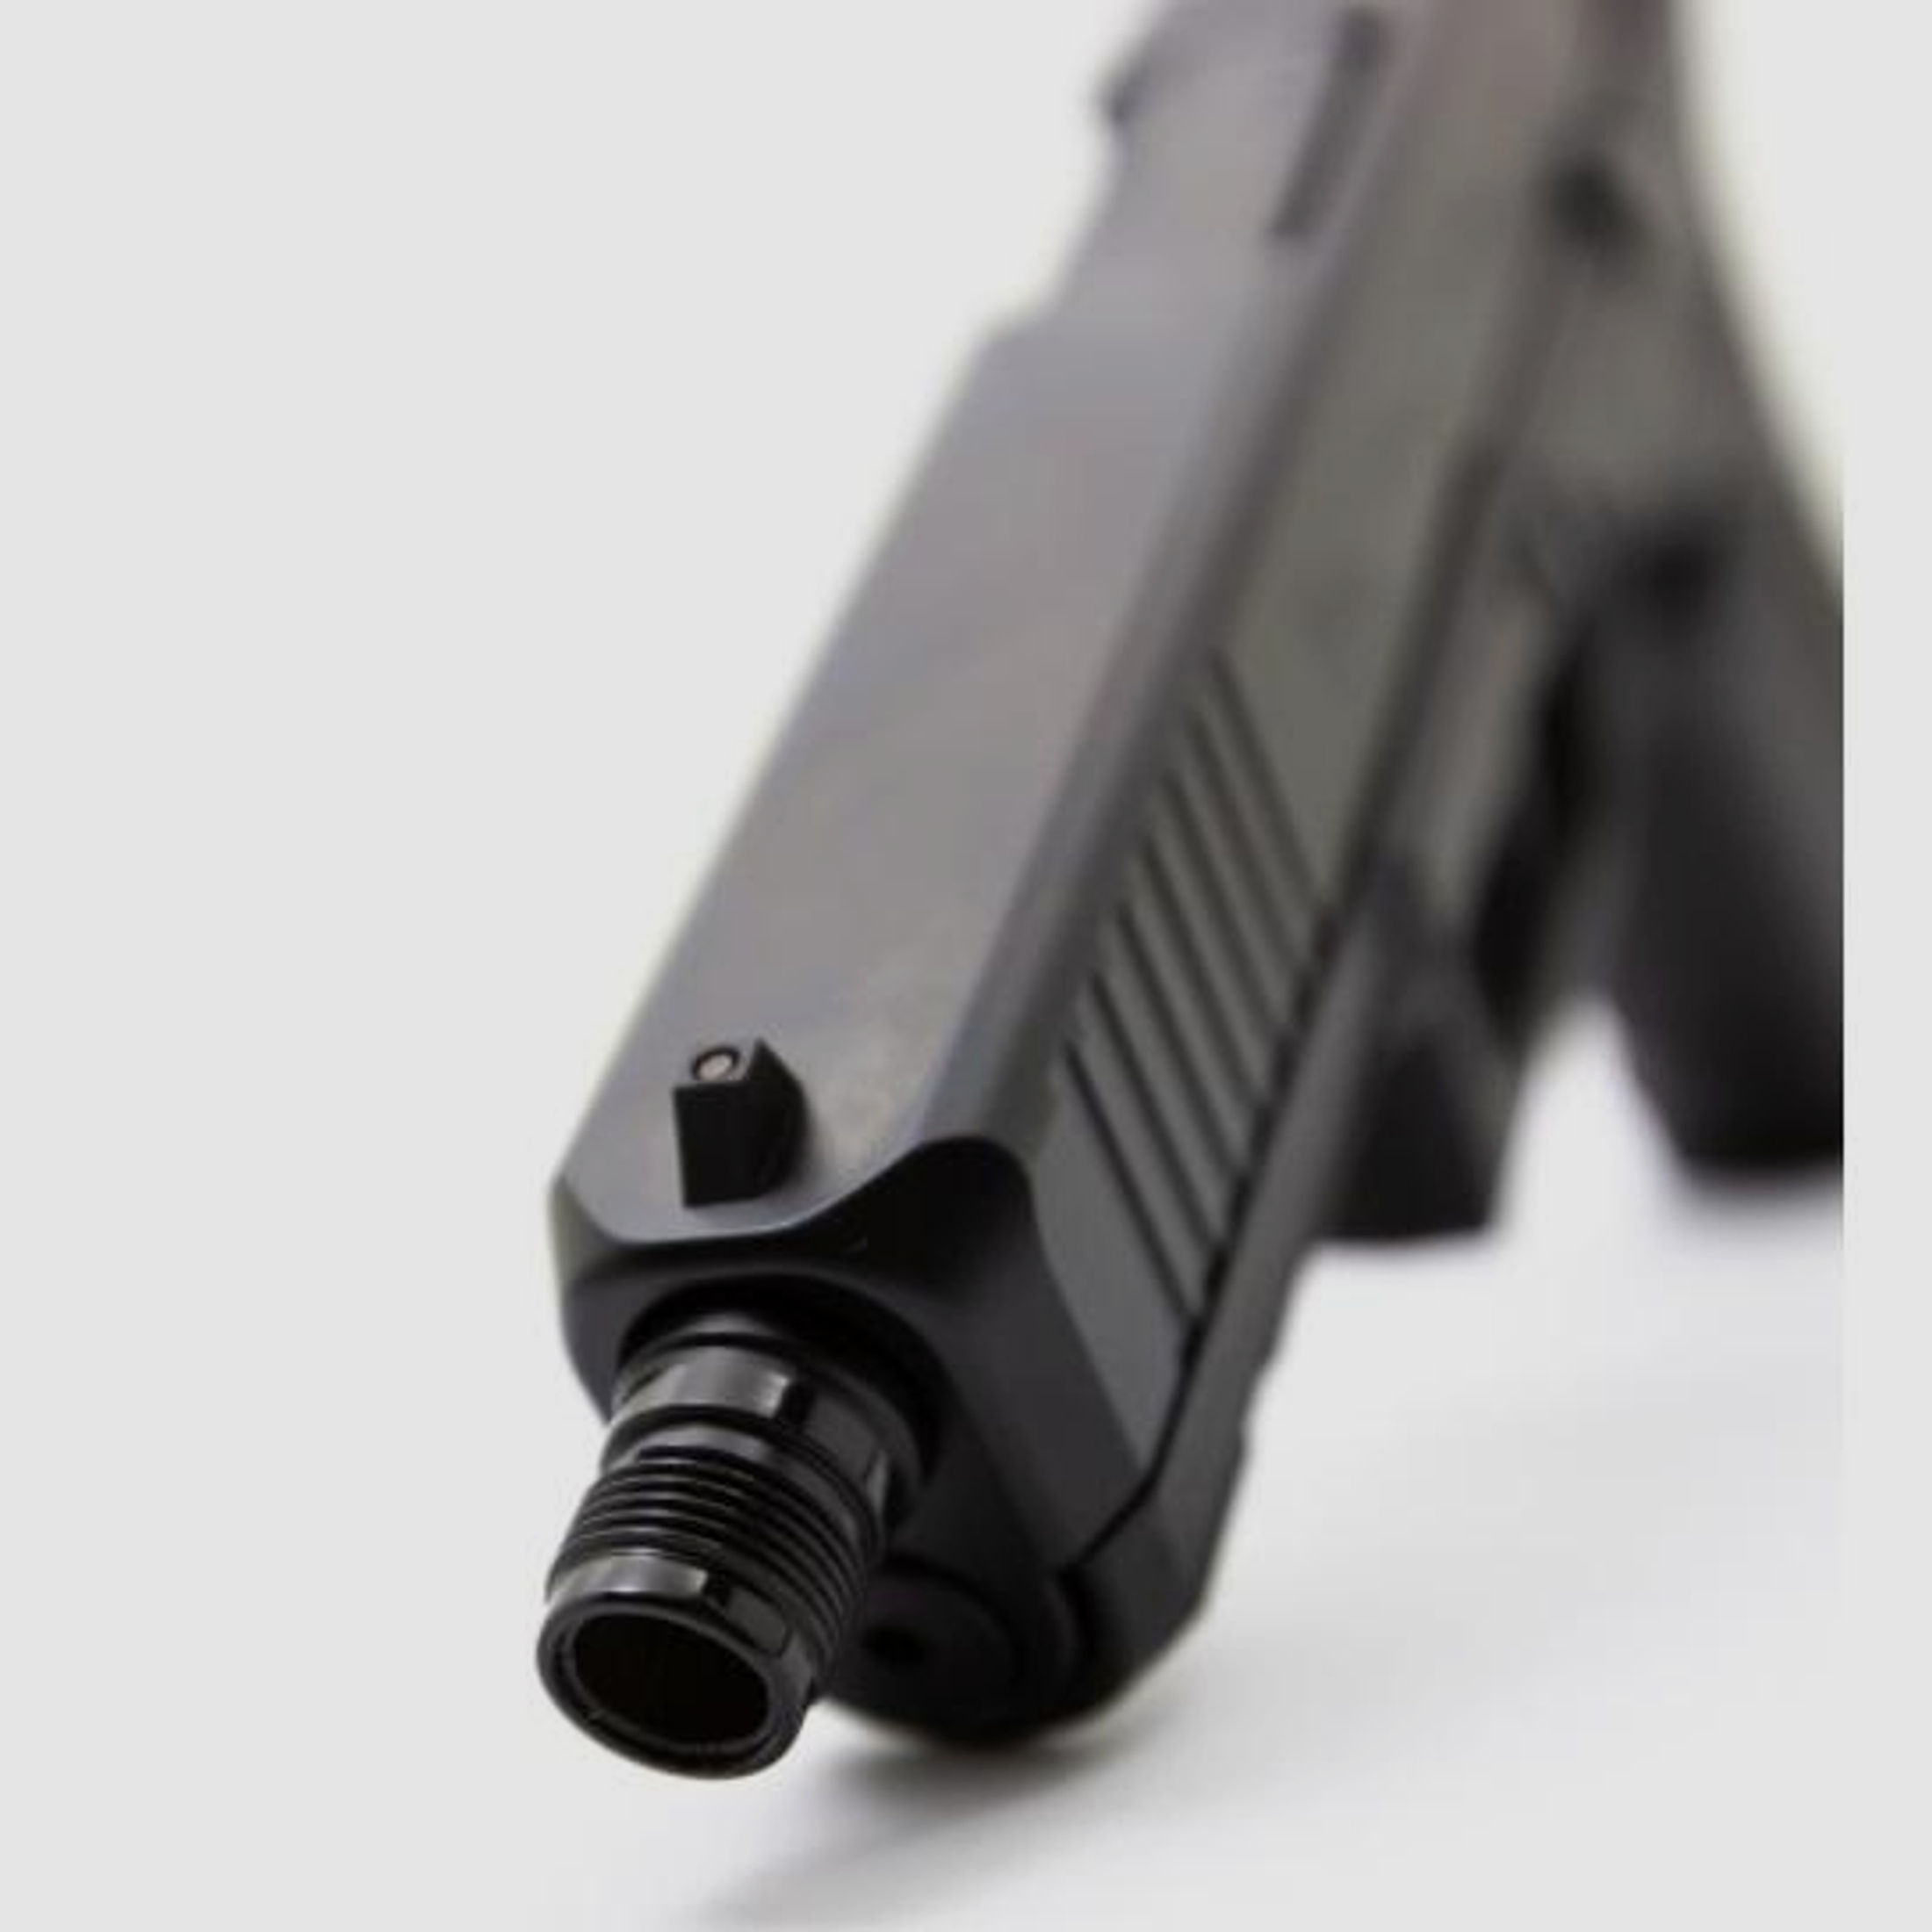 GLOCK Pistole Mod. 19 Gen5 MOS SD 9mmLuger   mit Gewindelauf